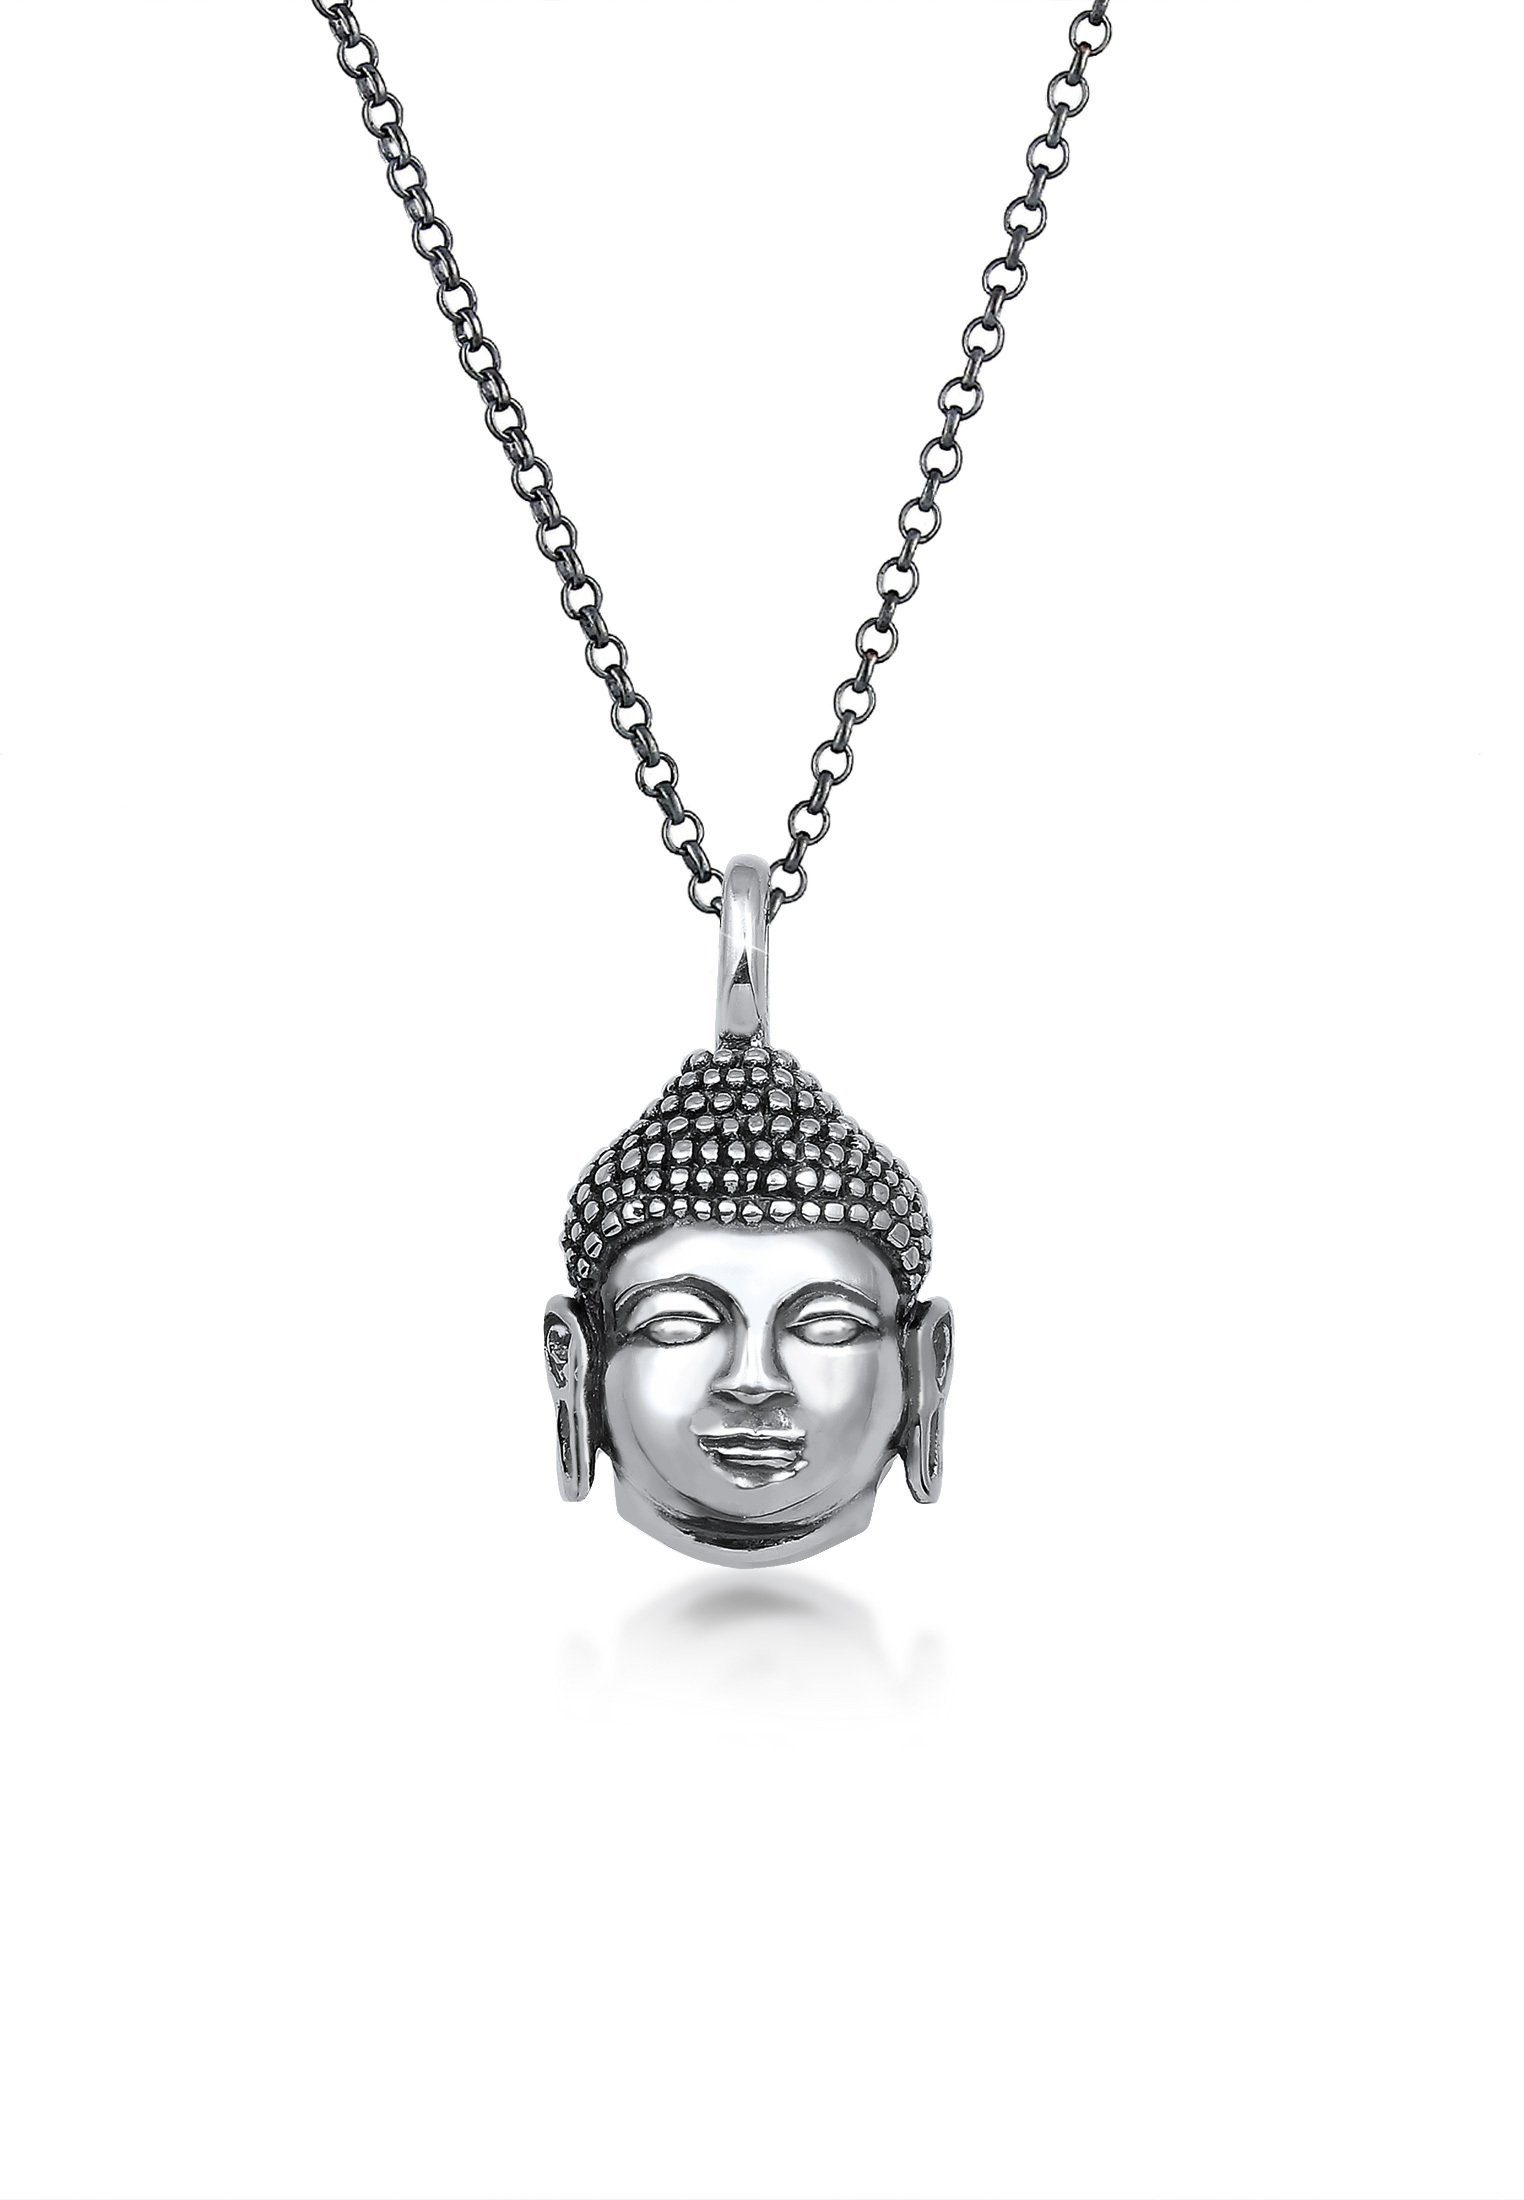 Anhänger Kopf Lange Kette Herren Oxidiert Silber 925 Buddha Kuzzoi